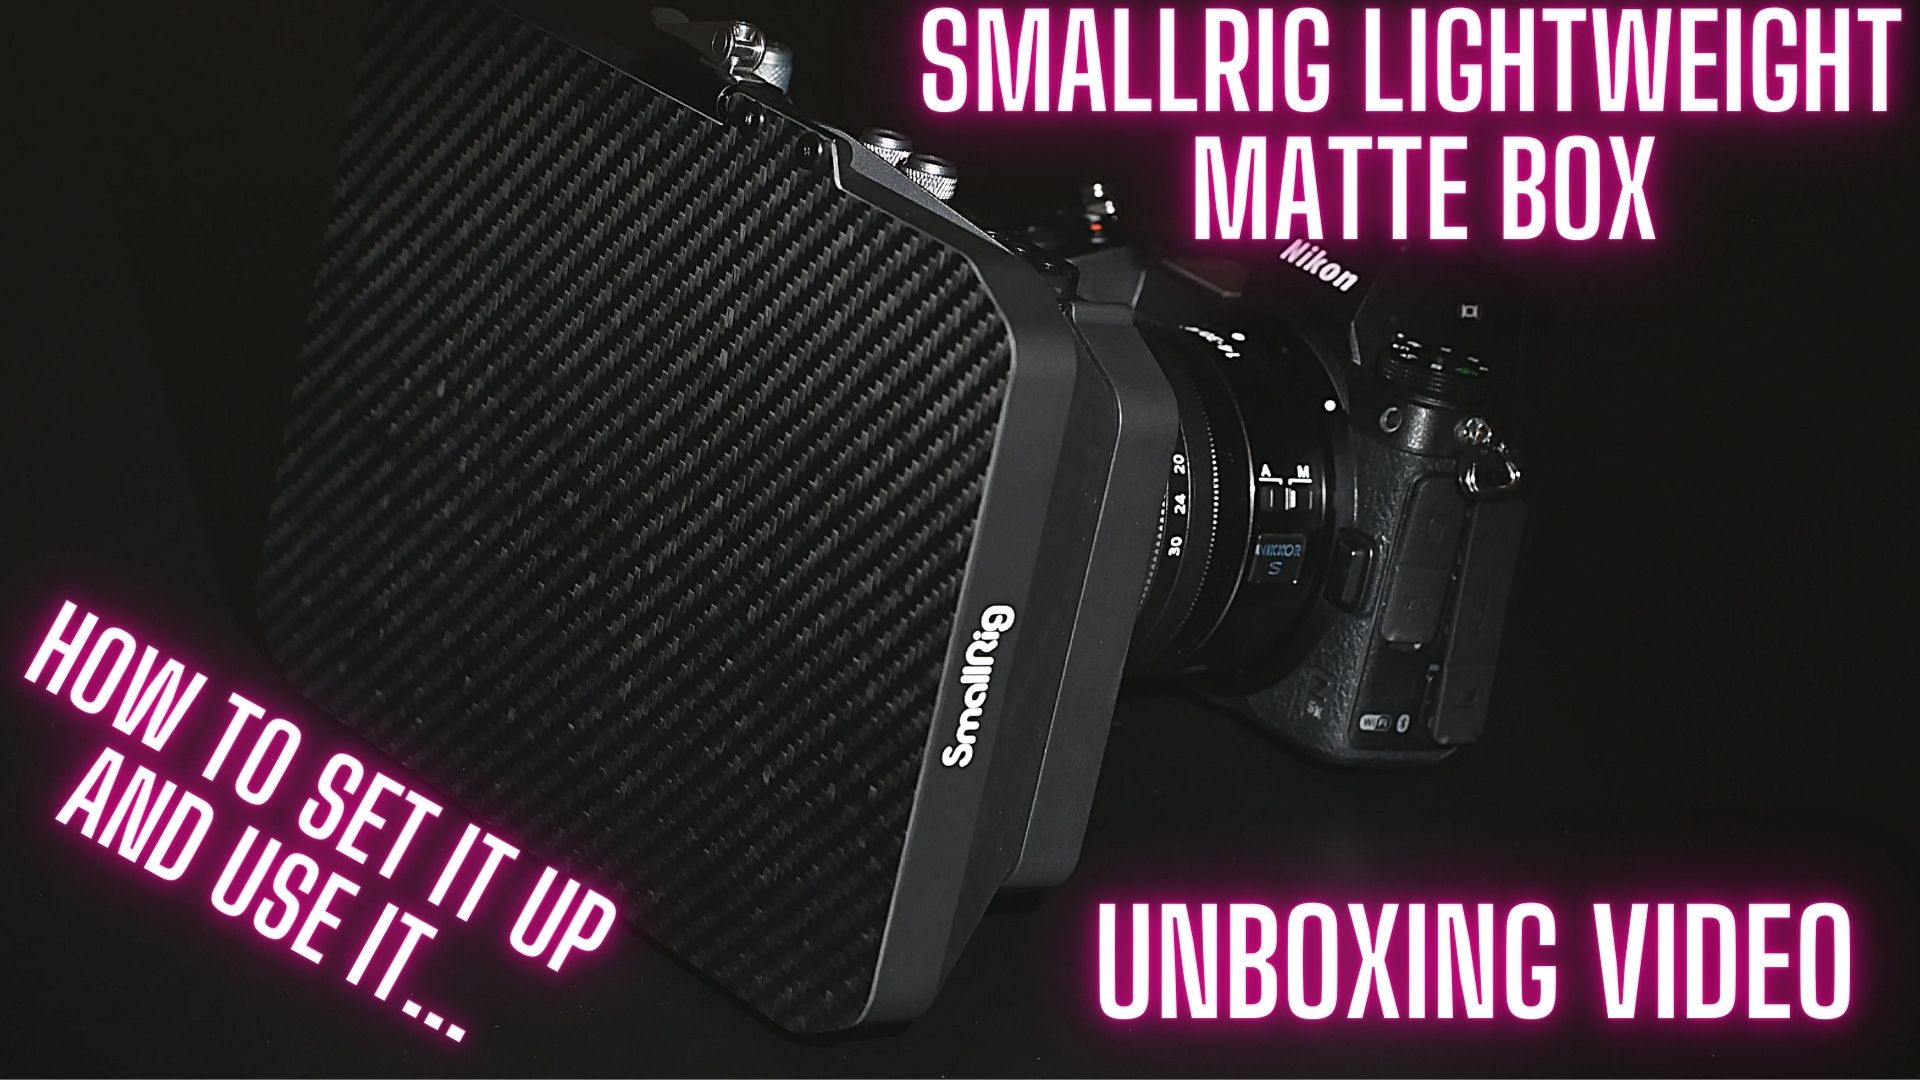 SmallRig Lightweight matte box unboxing video